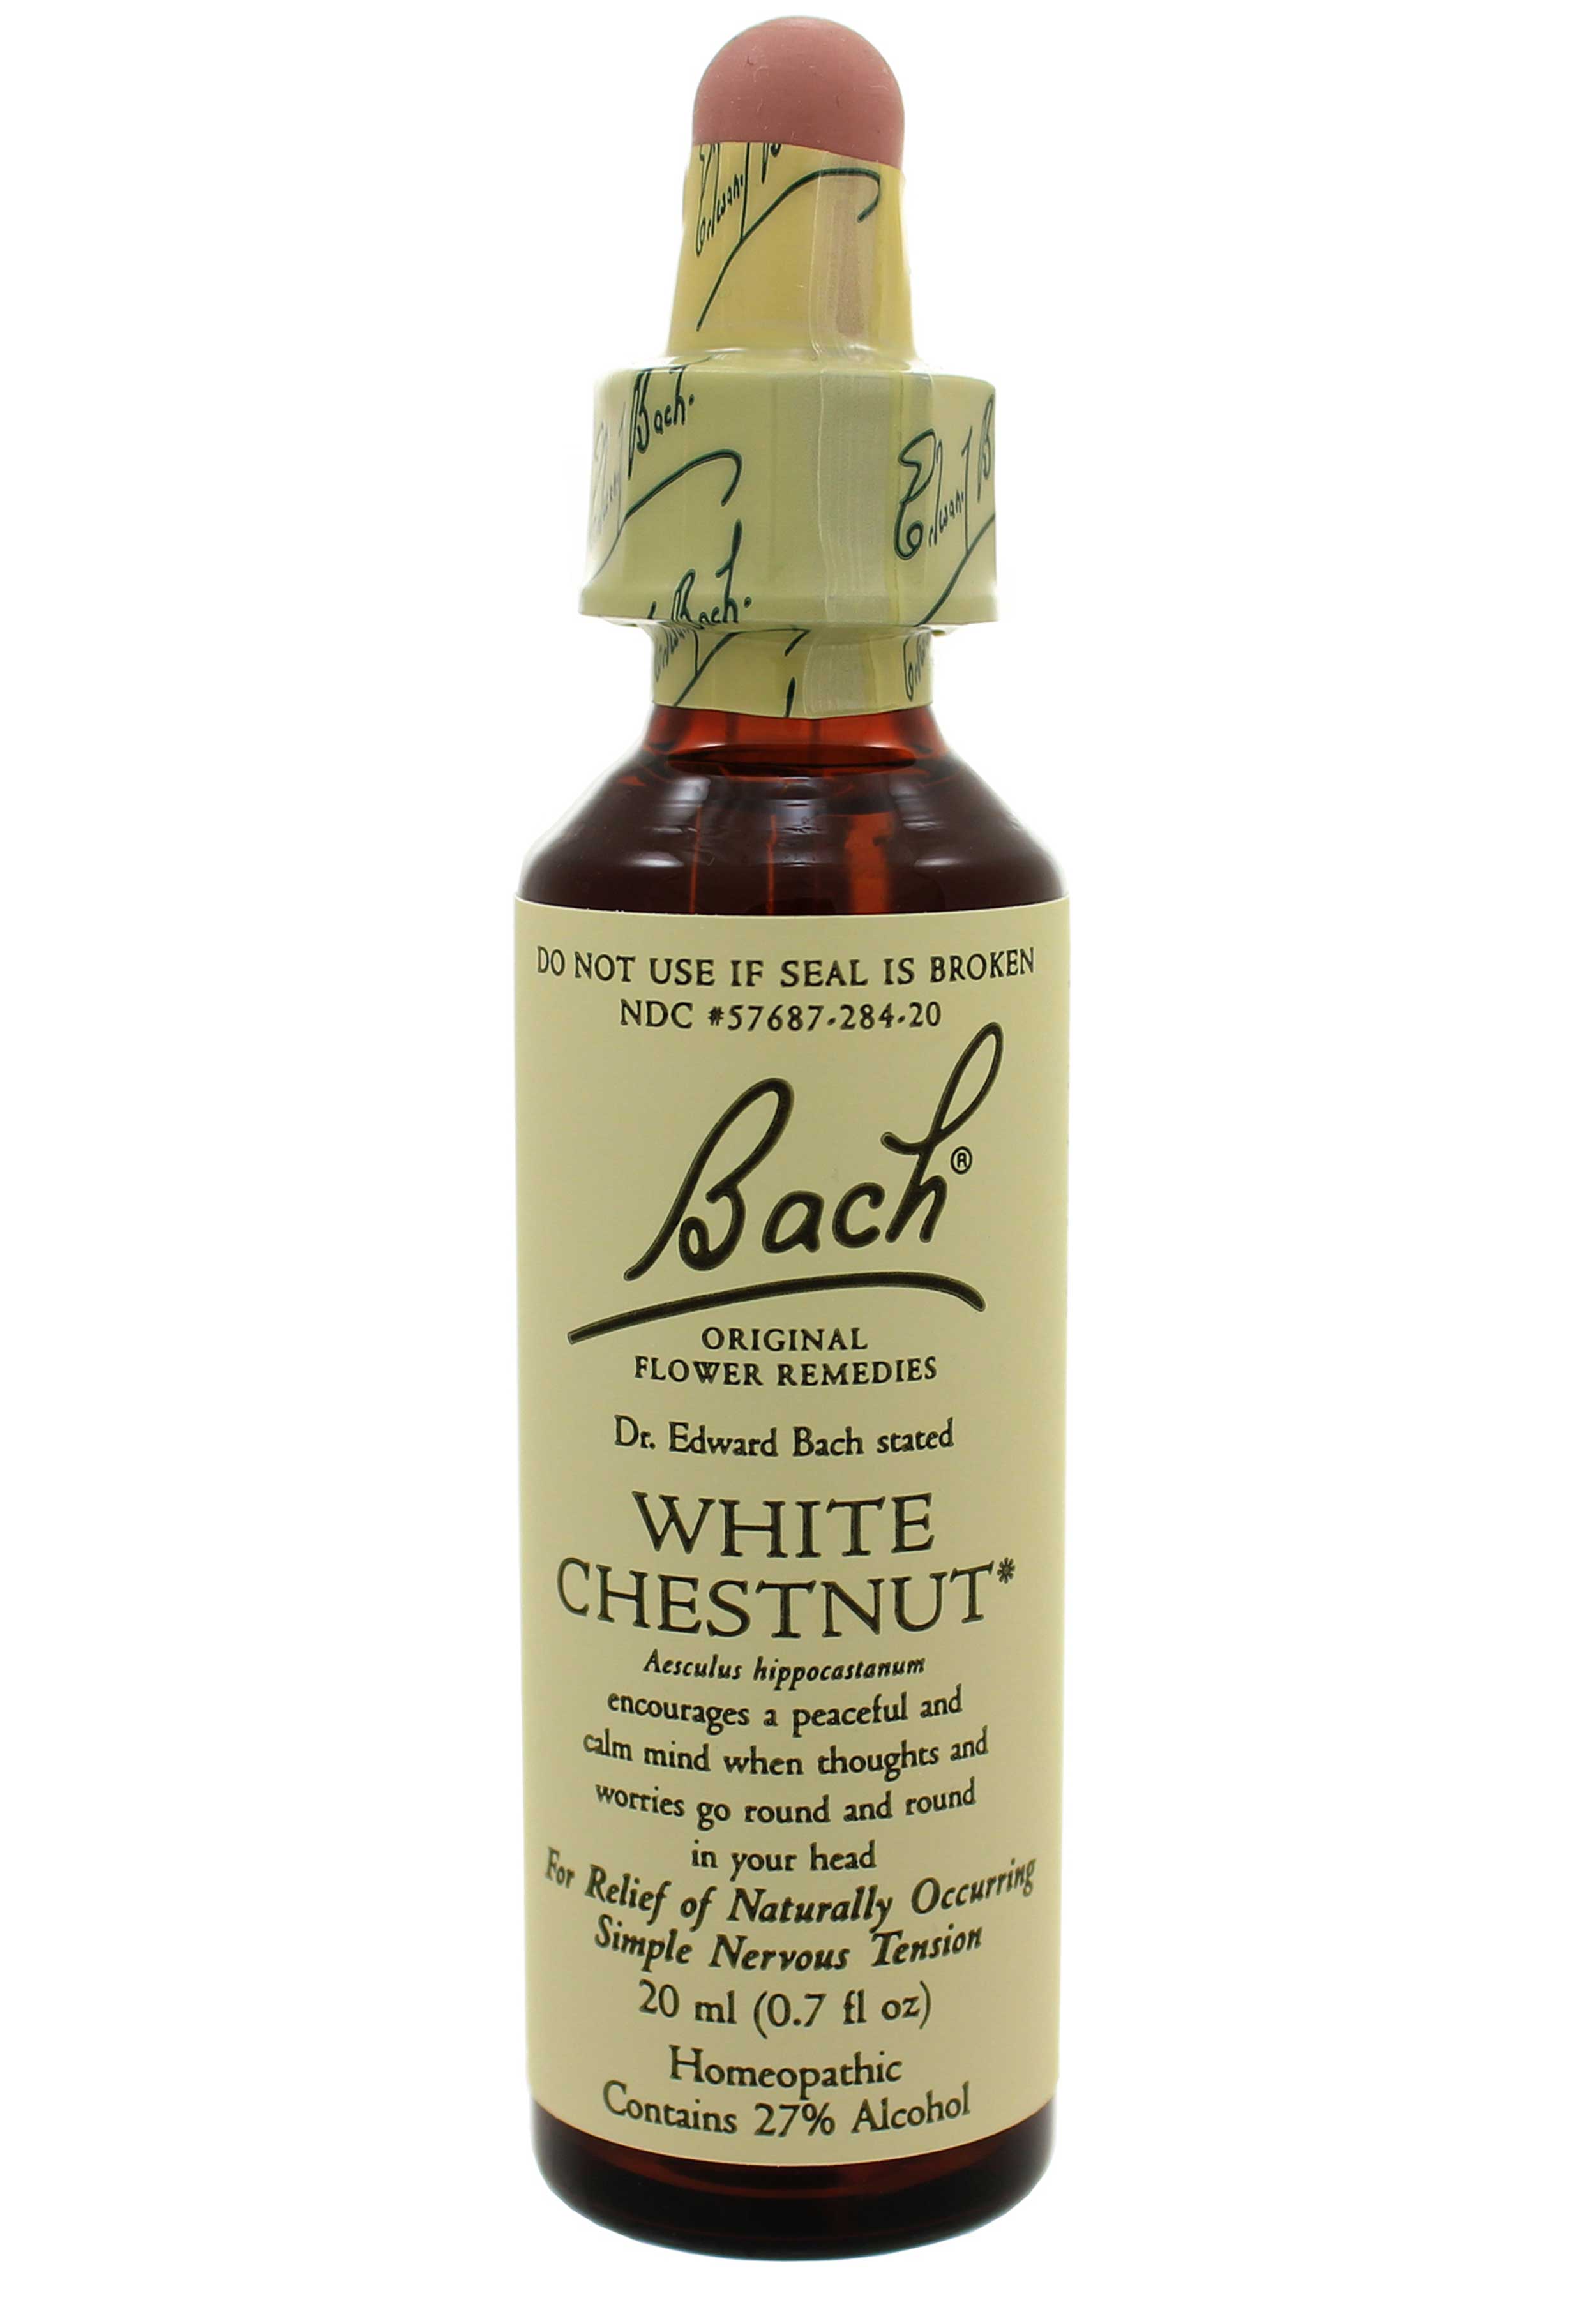 Bach Flower Remedies White Chestnut